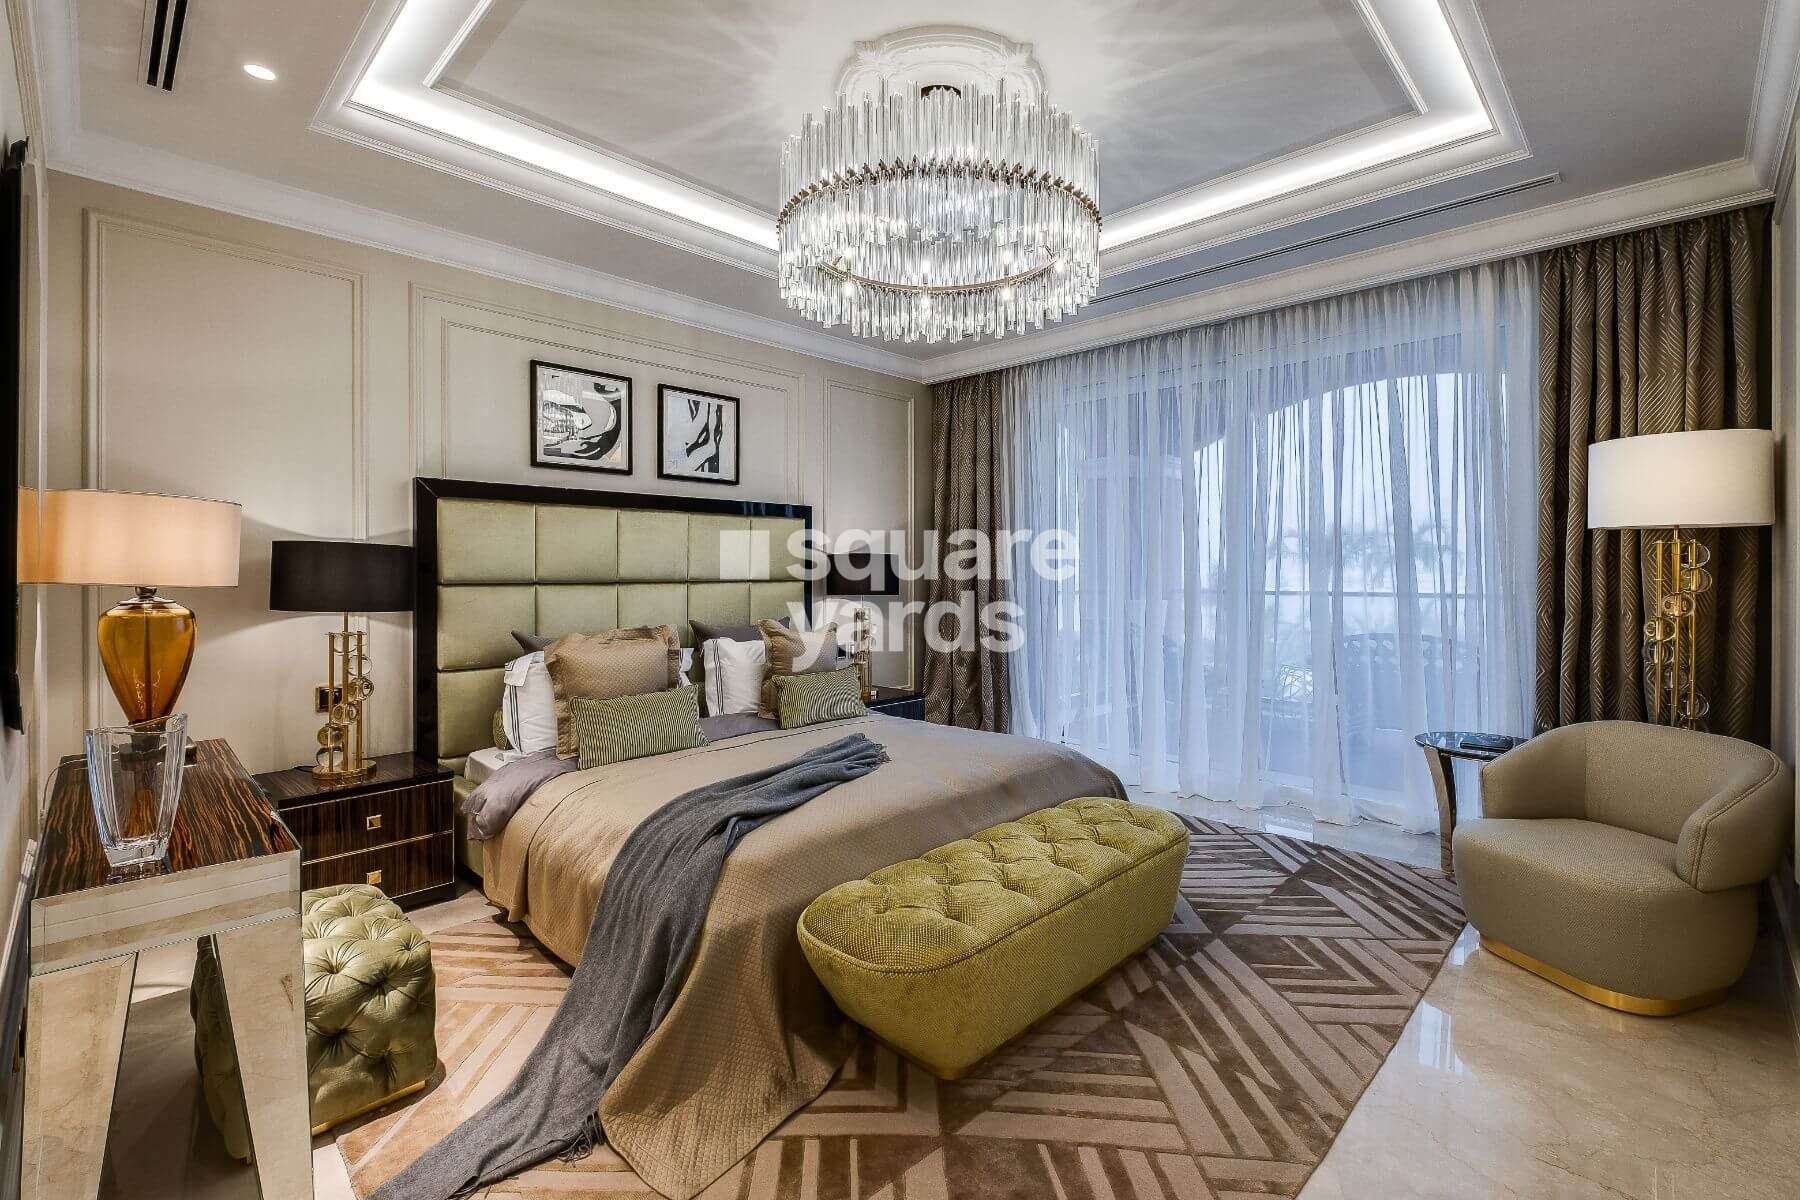 22 carat penthouse palm jumeirah project apartment interiors1